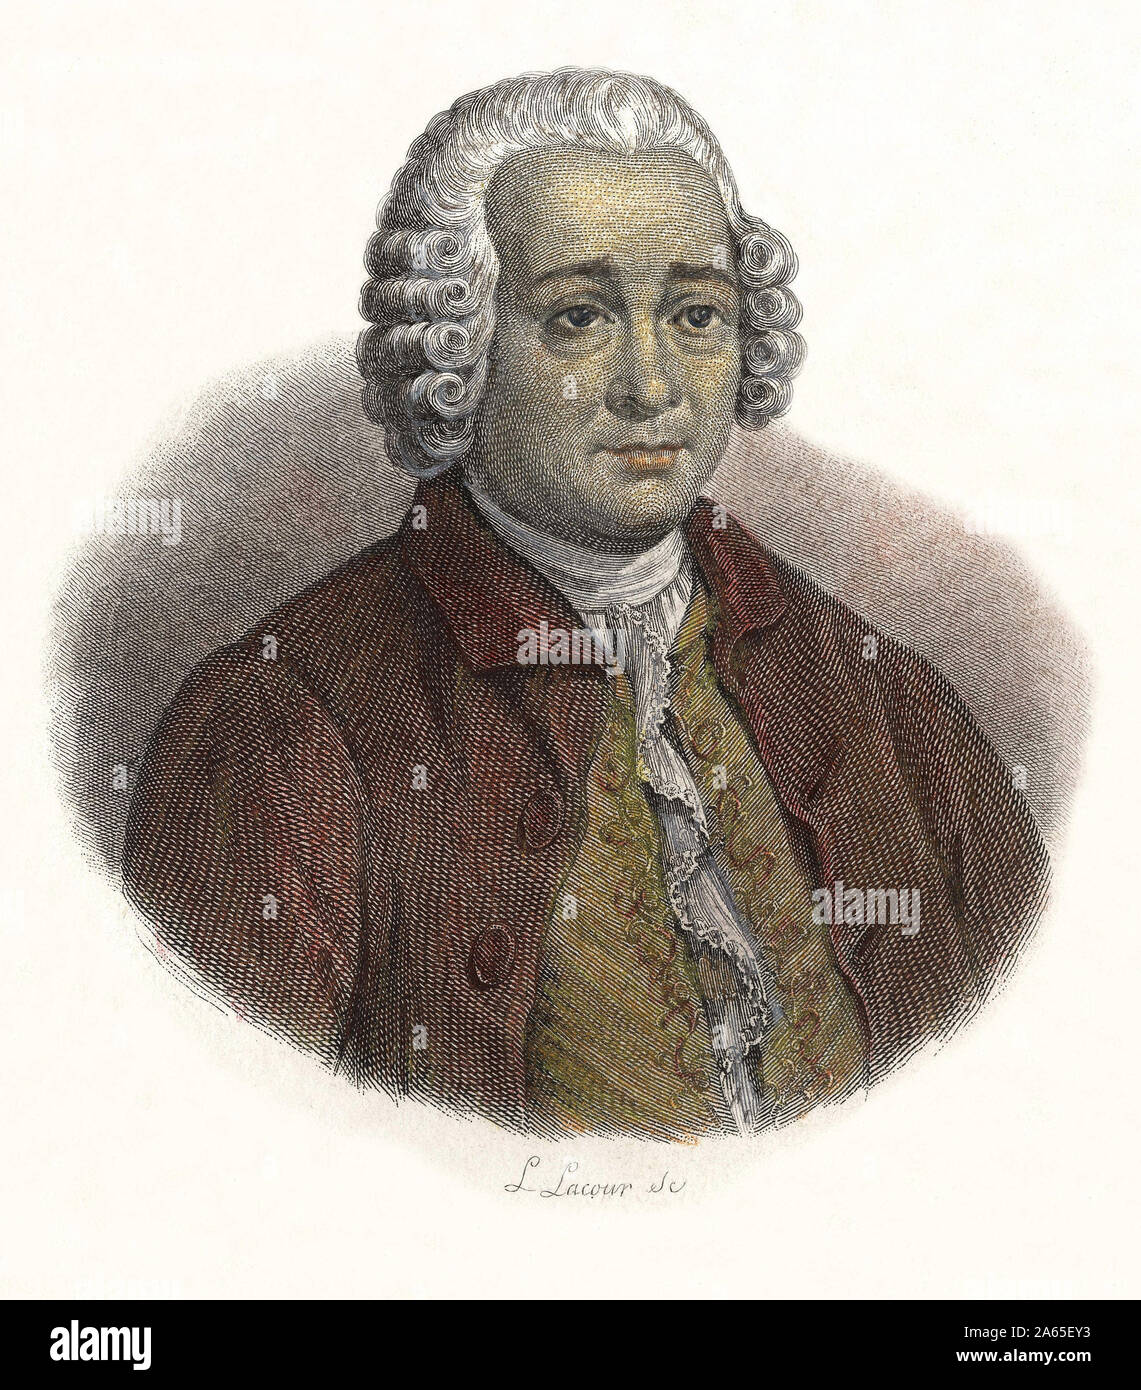 Portrait de Guillaume Chretien (Guillaume-Chretien) de Lamoignon de Malesherbes (1721-1794), magistrat francais. in 'Portraits des Hommes Utiles', 183 Stock Photo